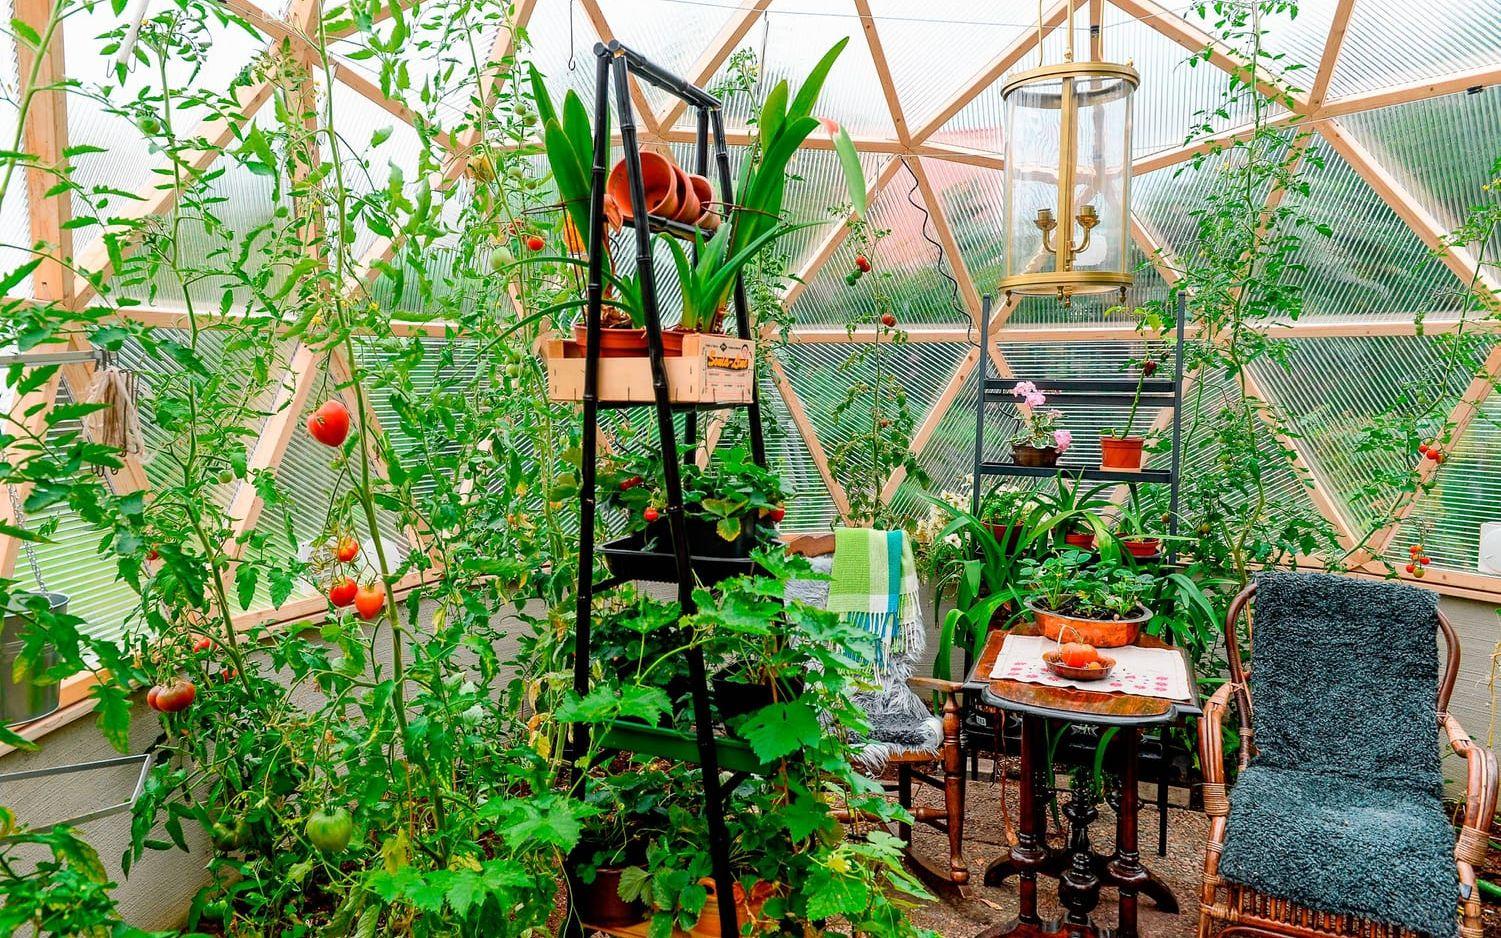 Odling på höjden. Tomatplantorna stortrivs i det runda växthuset. För att ta tillvara på ytan sker odling på flera nivåer.